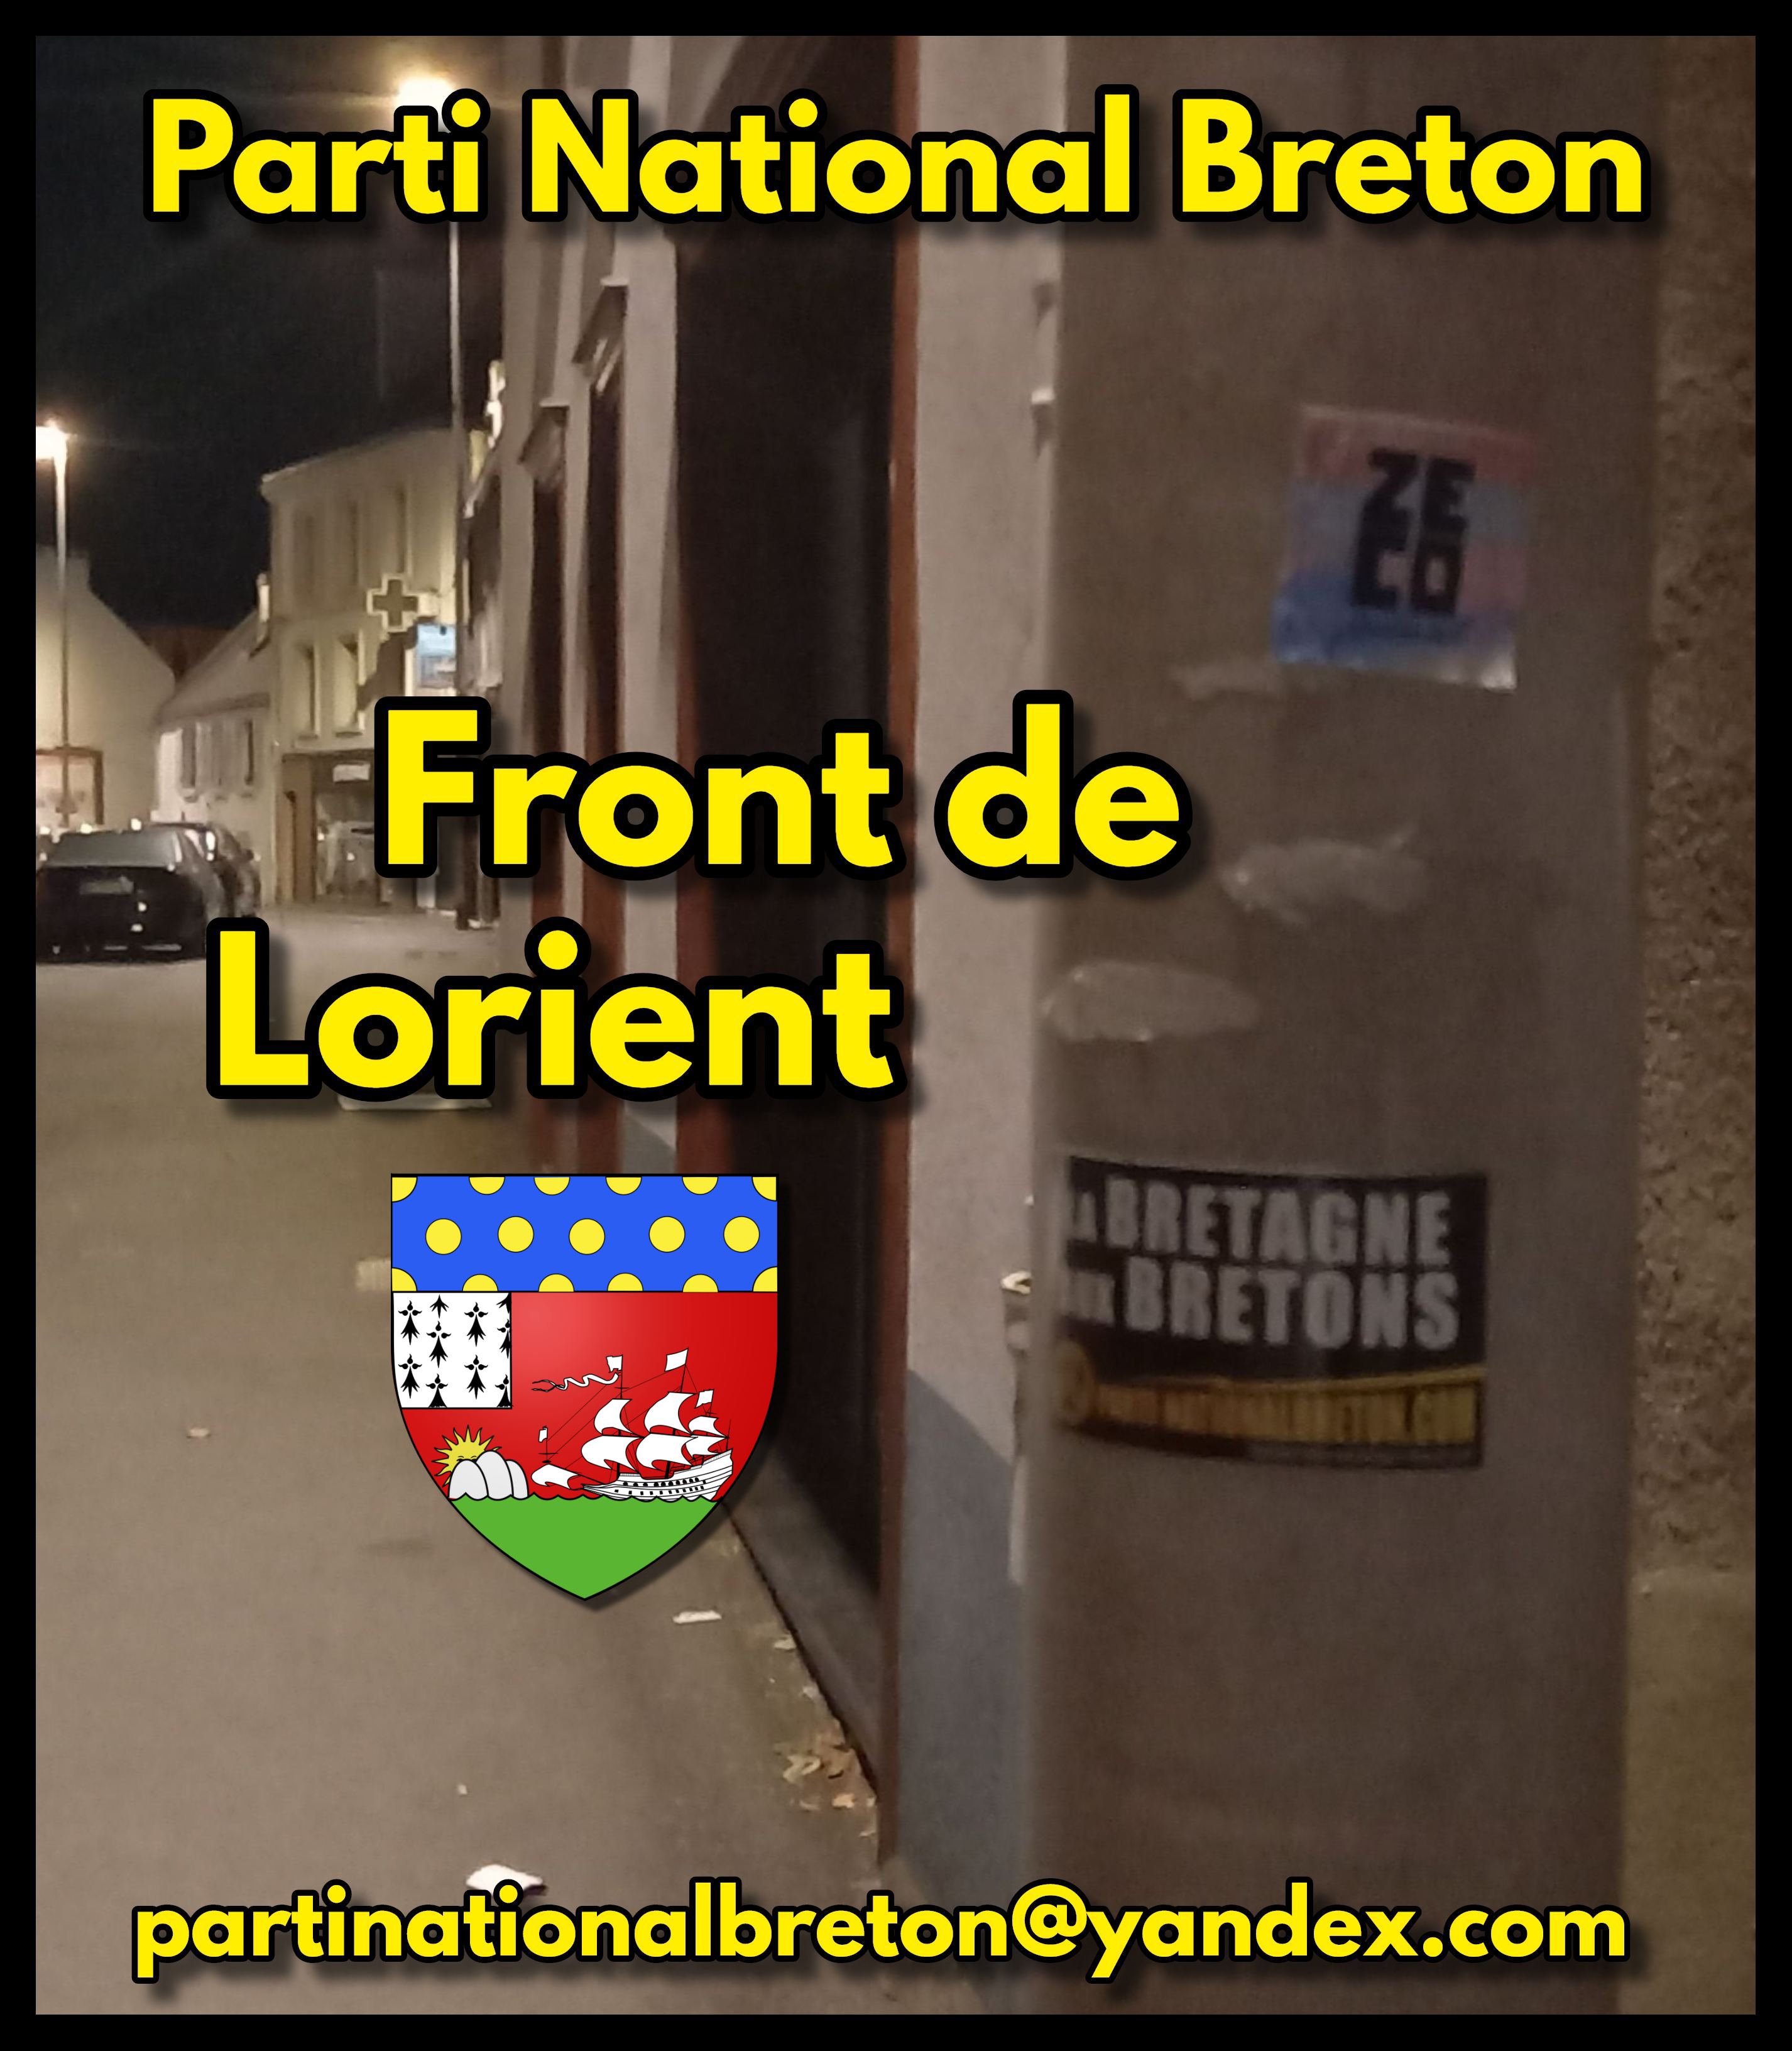 Le Parti National Breton affirme la présence nationaliste dans les rues de Lorient !